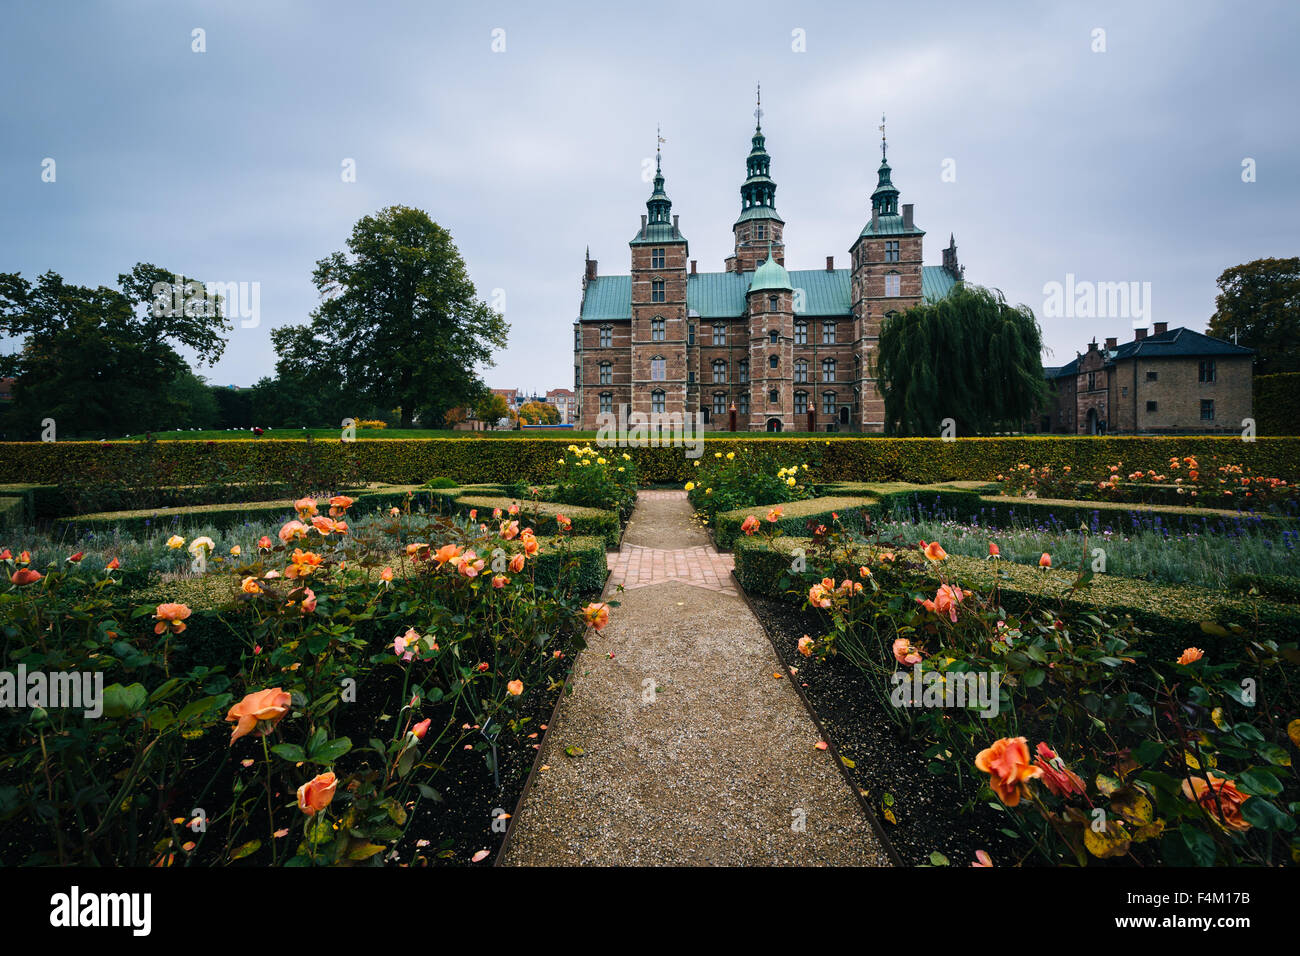 Los jardines y el castillo de Rosenborg, en Copenhague, Dinamarca. Foto de stock